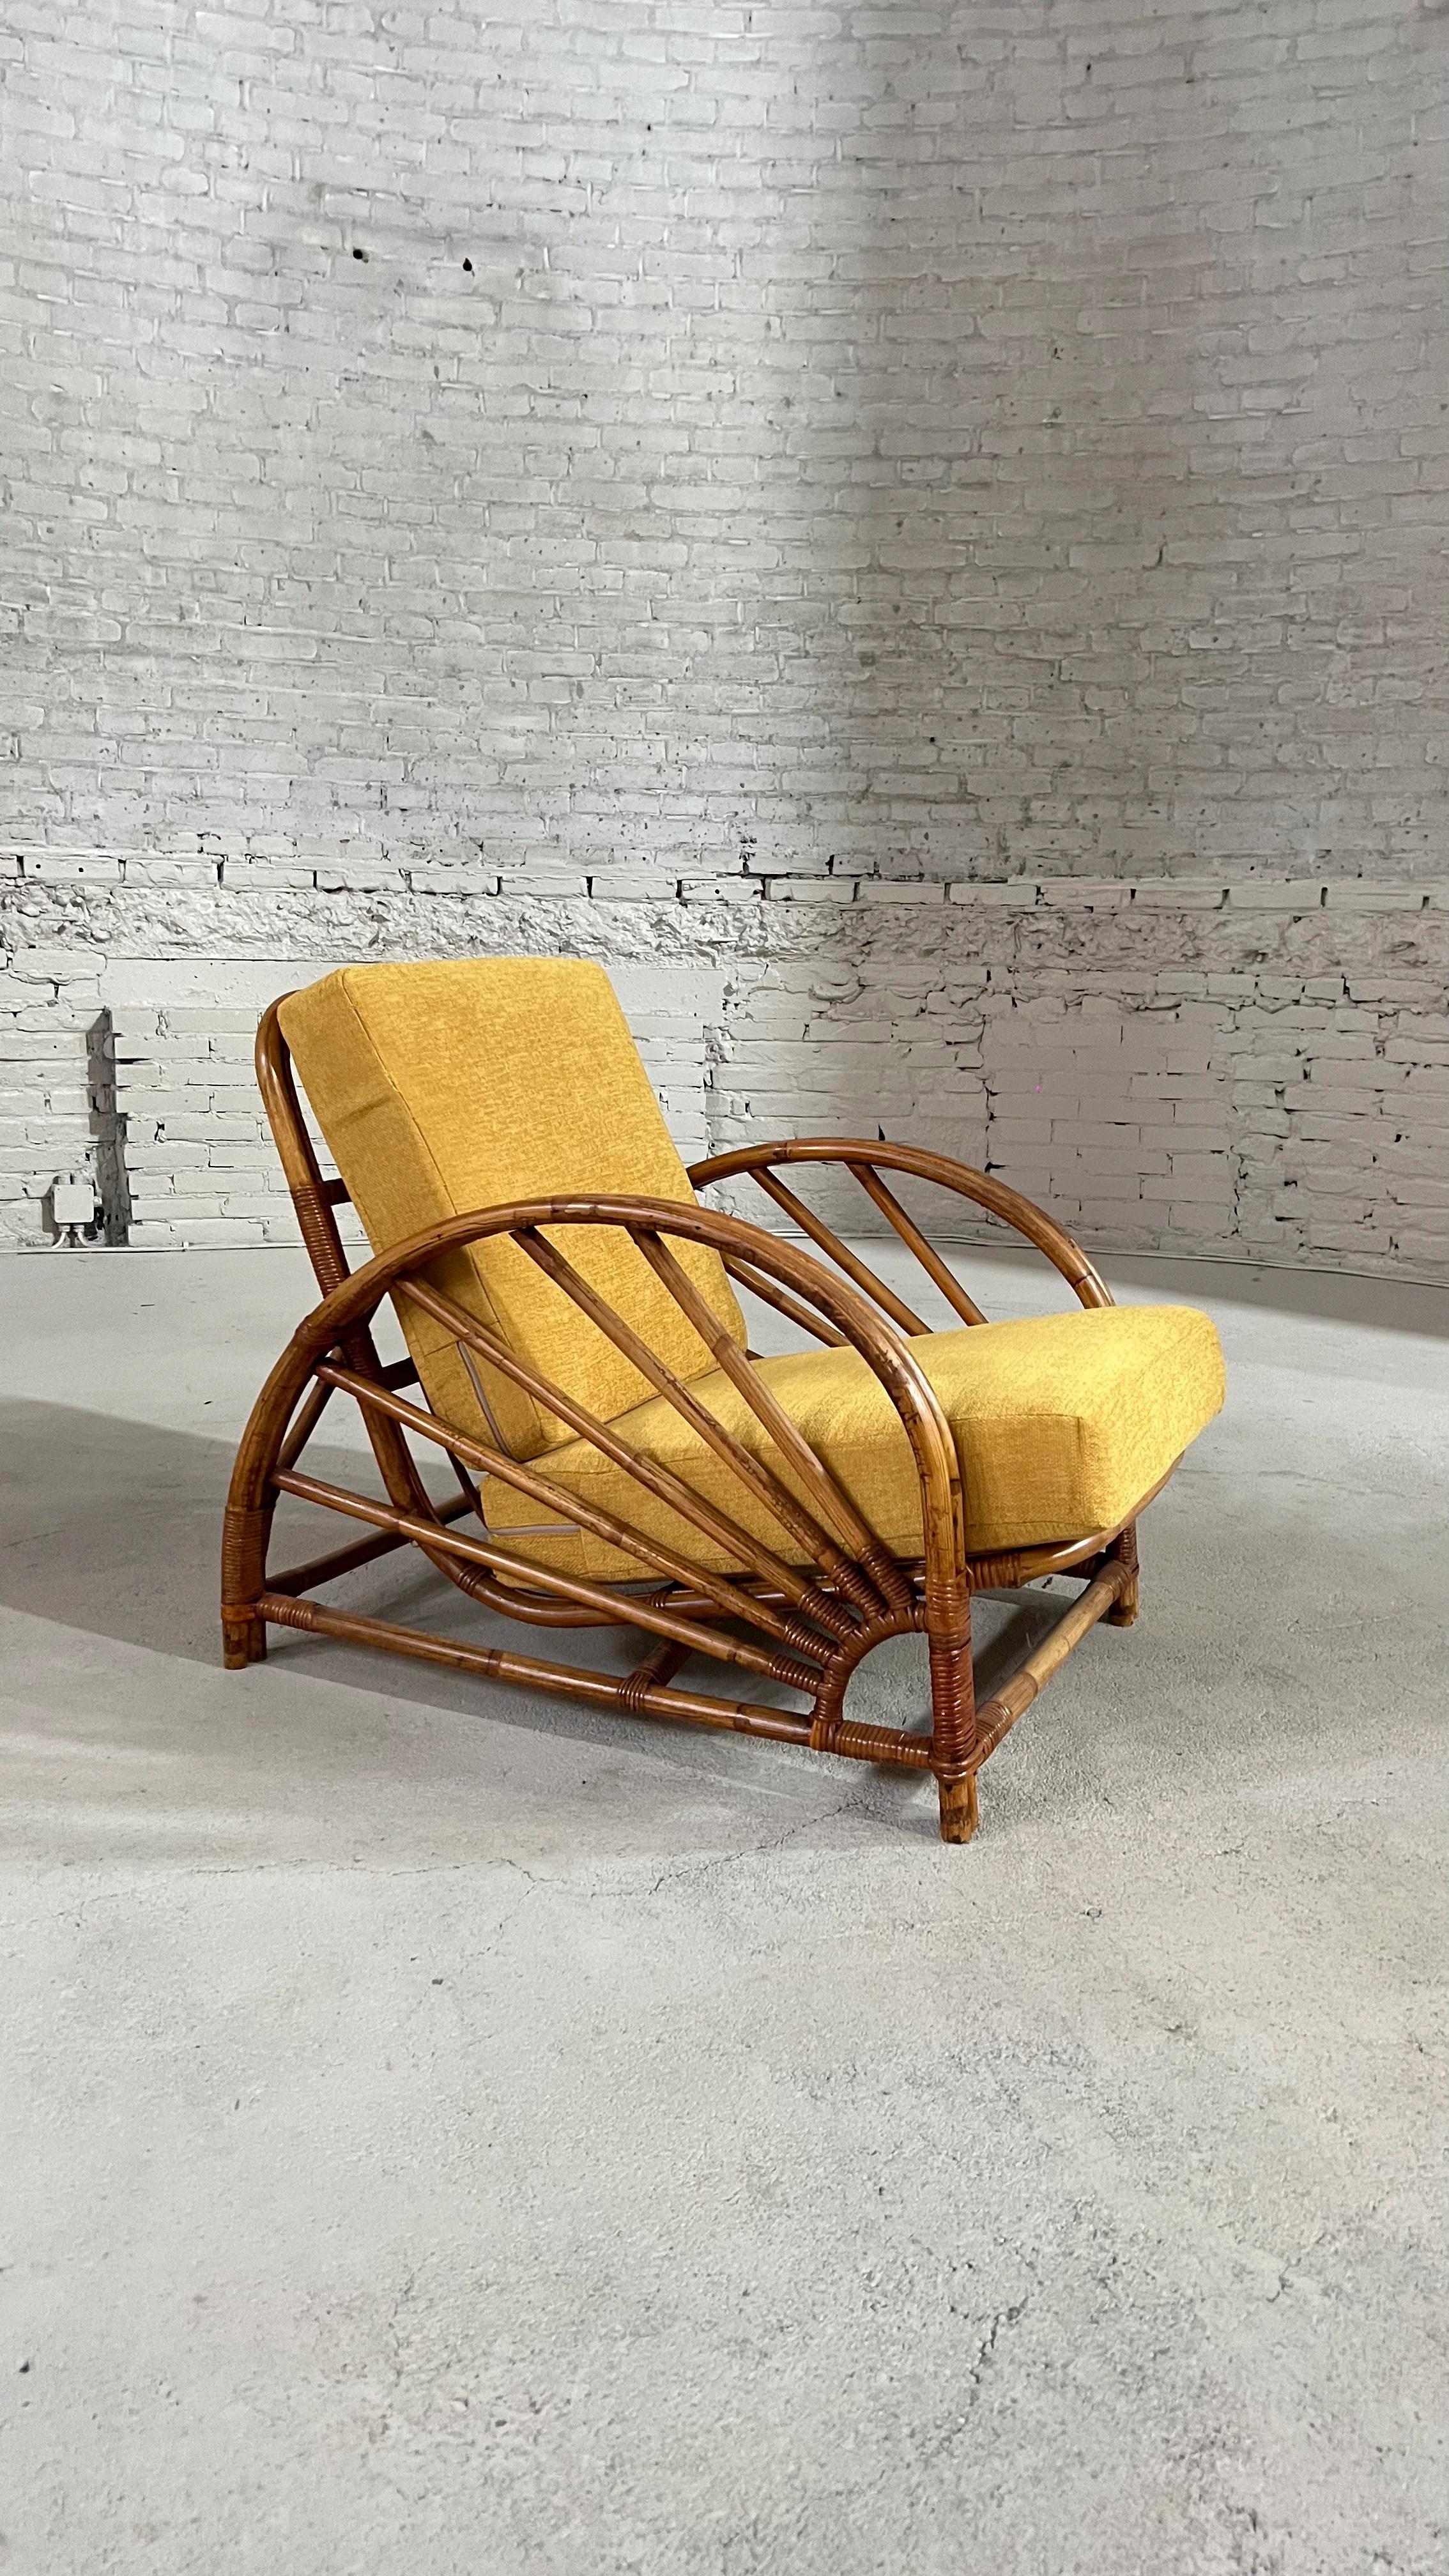 Vintage-Sessel von Paul Frank. Dieser Rattanstuhl ist in neuwertigem Zustand.

Die Sitze sind mit einem curryfarbenen Stoff gepolstert und machen dieses sommerliche Sofa äußerst bequem.